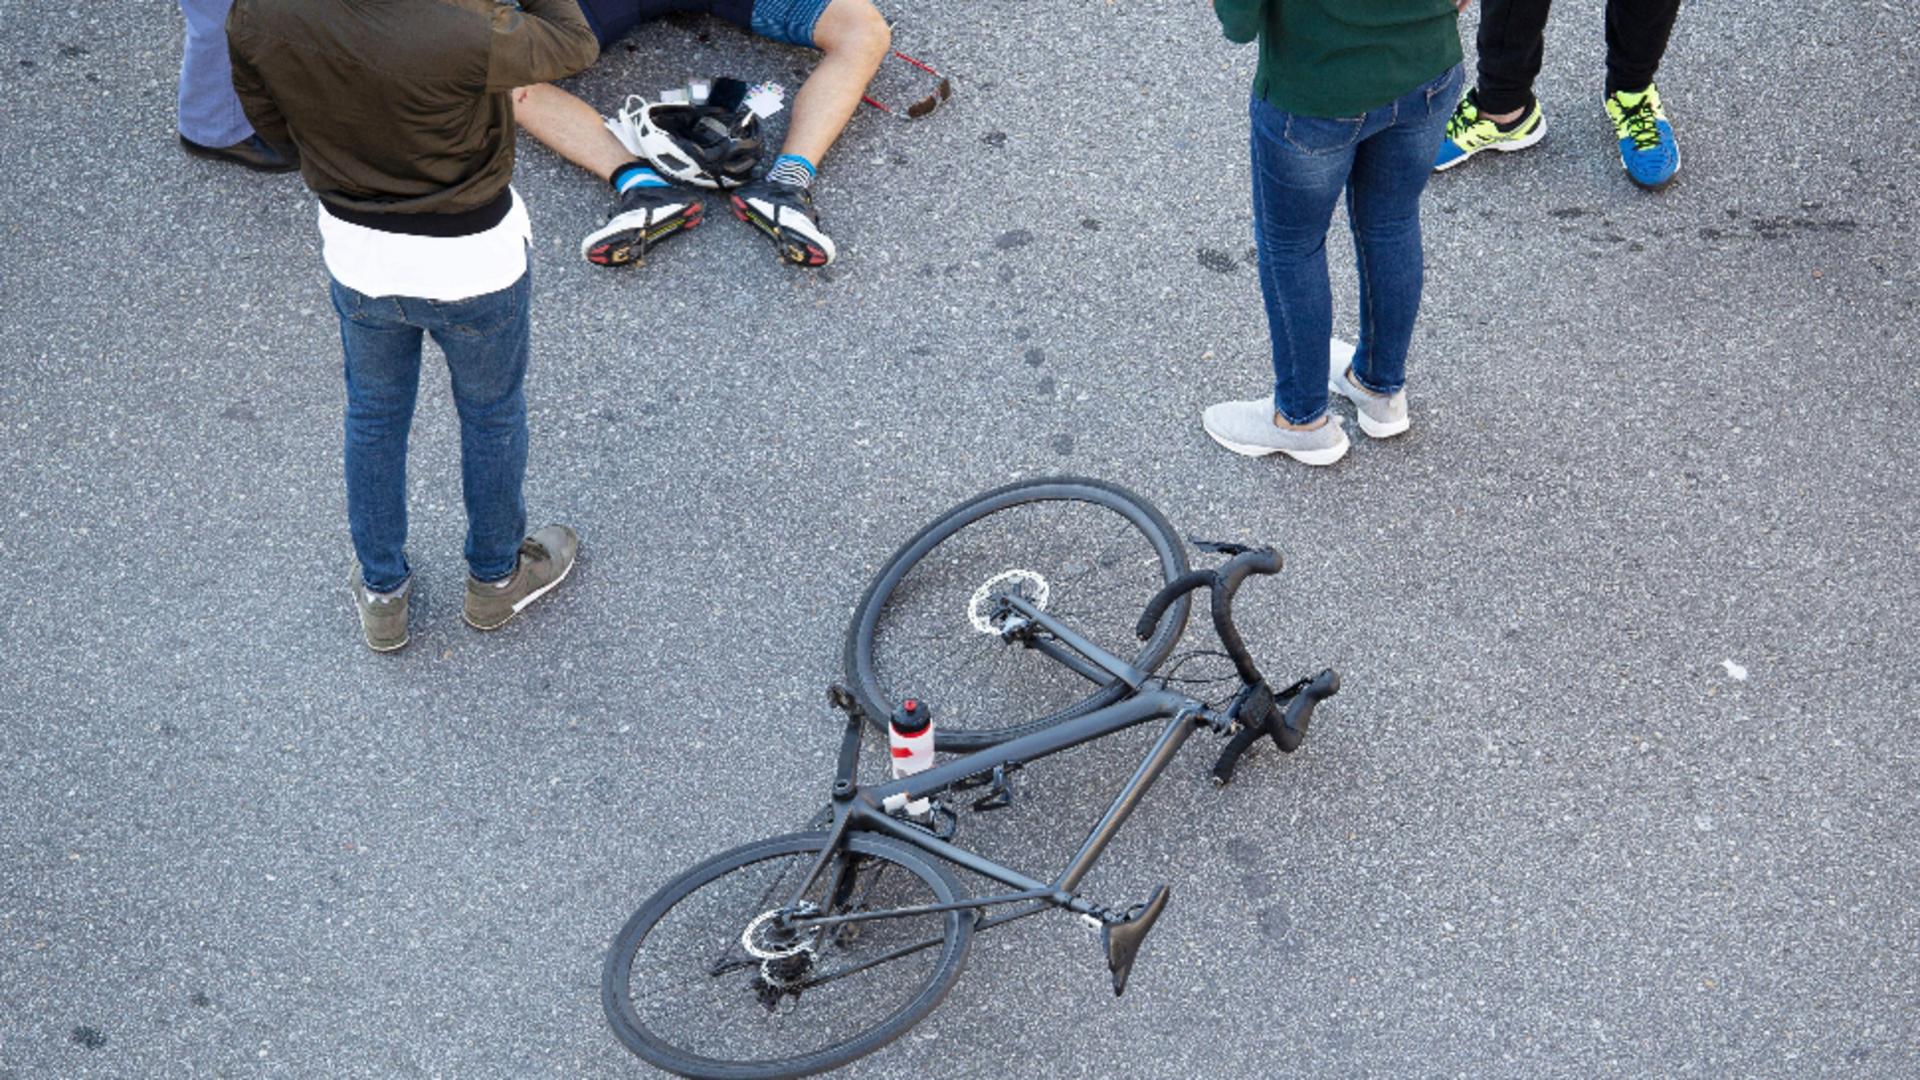 Biciclist grav rănit de o mașină de poliție. Foto/Profimedia